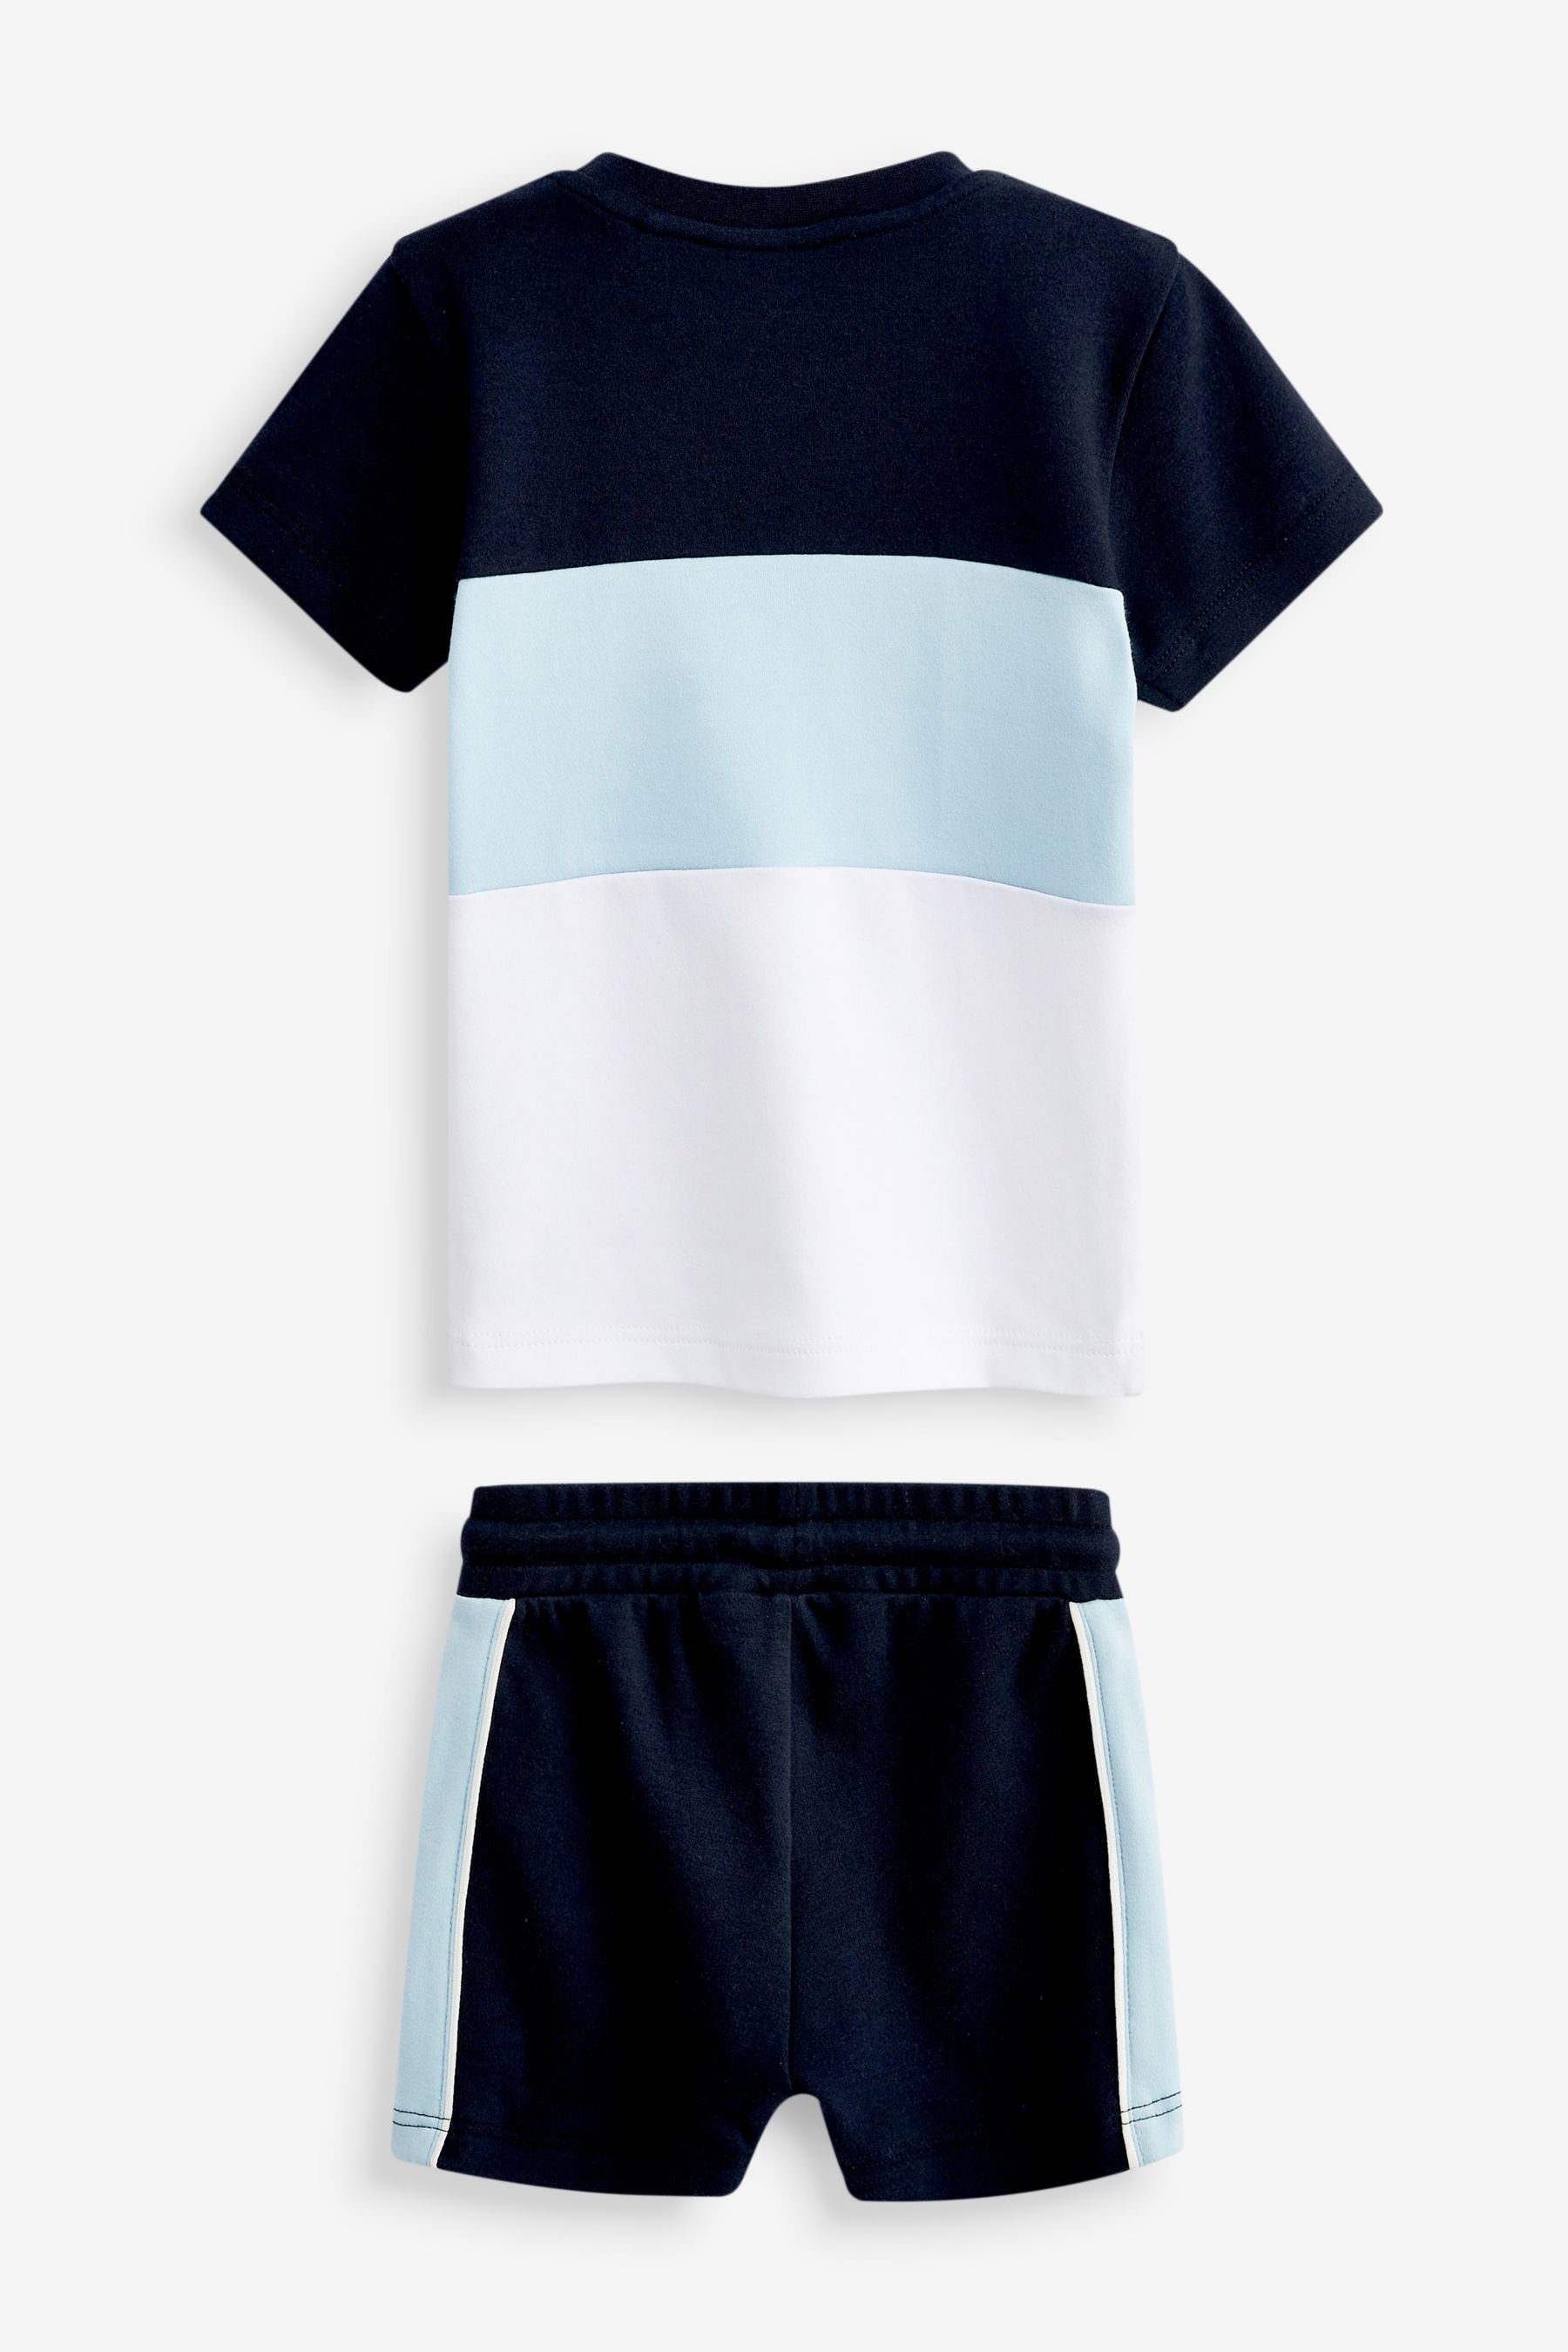 Hose Shorts und Blue & White im Kurzarm-T-Shirt and Blockfarben in (2-tlg) Shirt Set Next